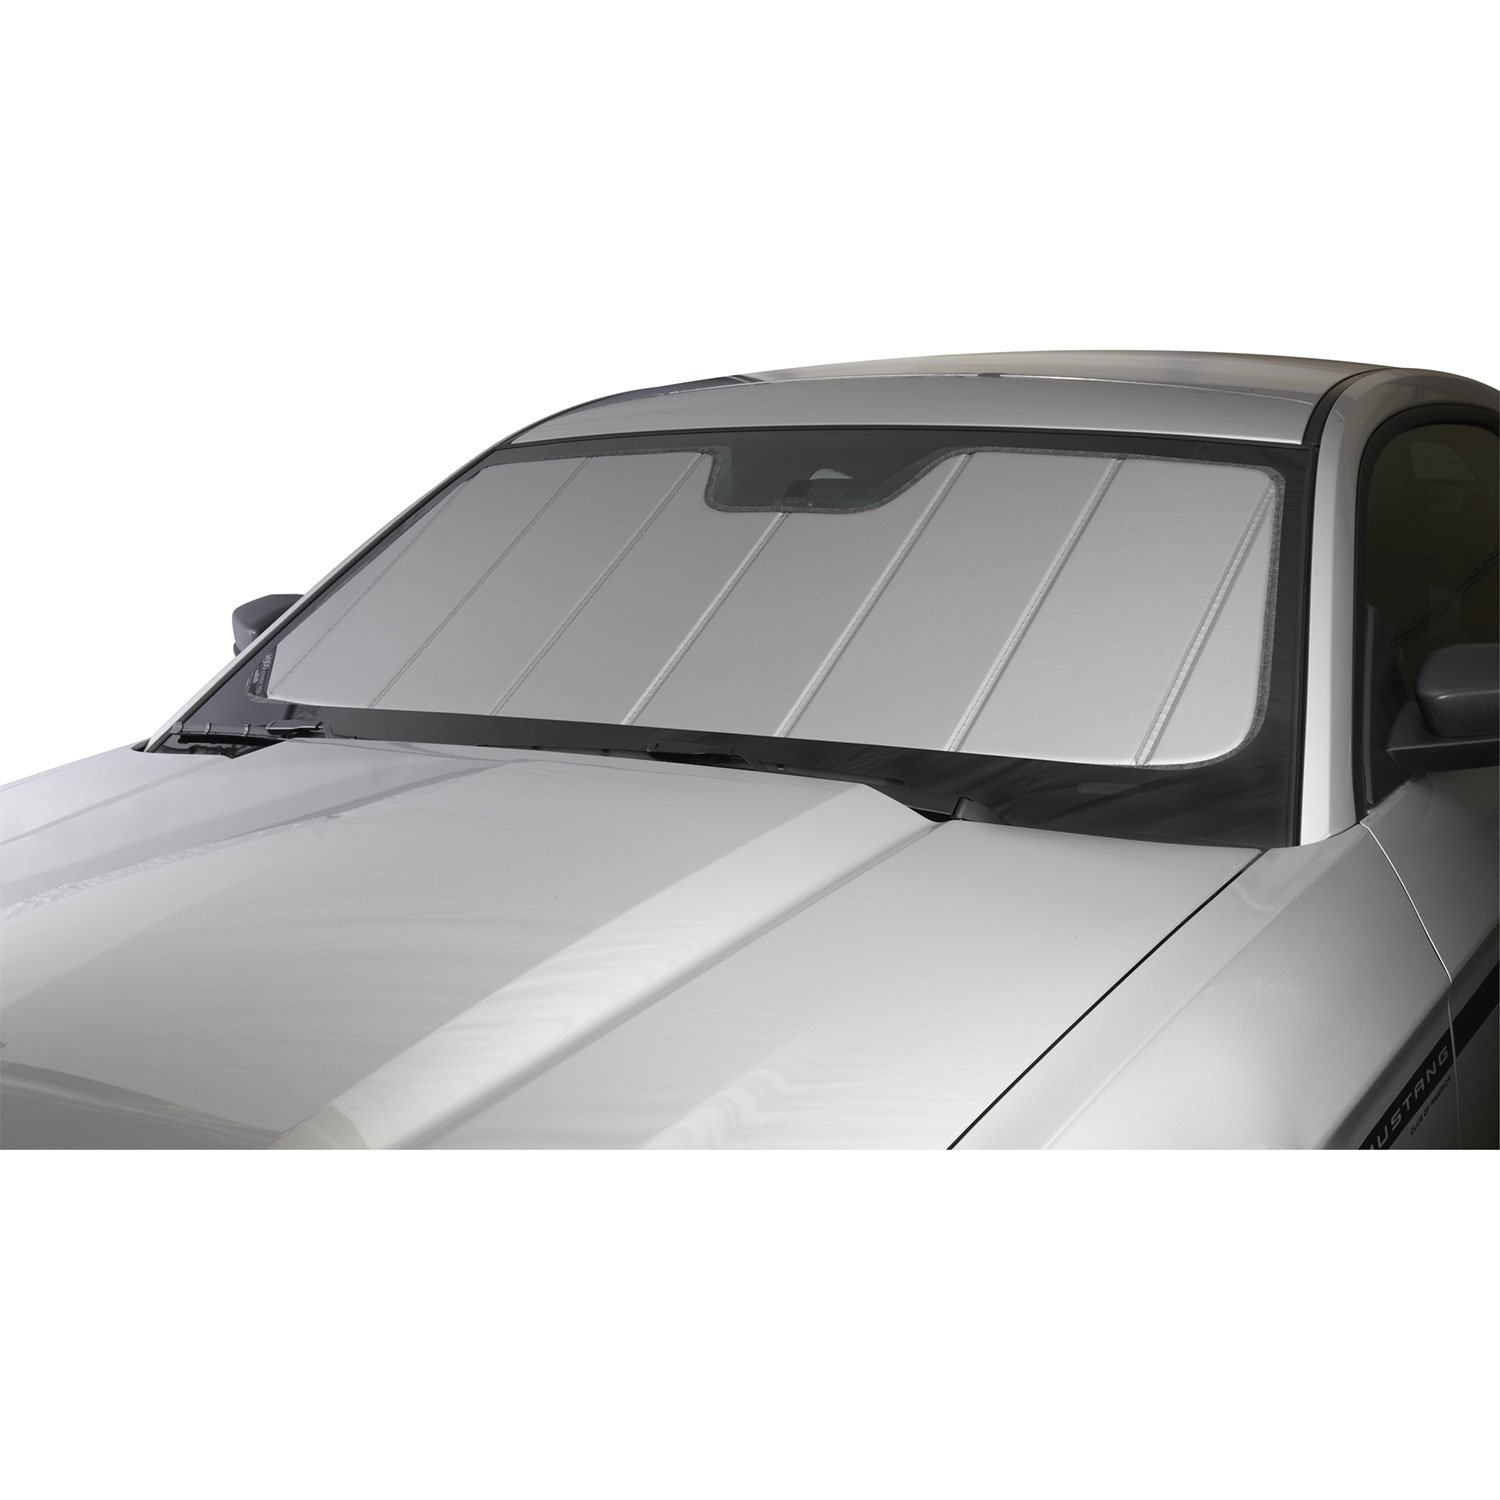 Covercraft UVS100 Sonnenschutz | UV11509SV | kompatibel mit ausgewählten Alfa Romeo Giulia Modellen, Silber von Covercraft